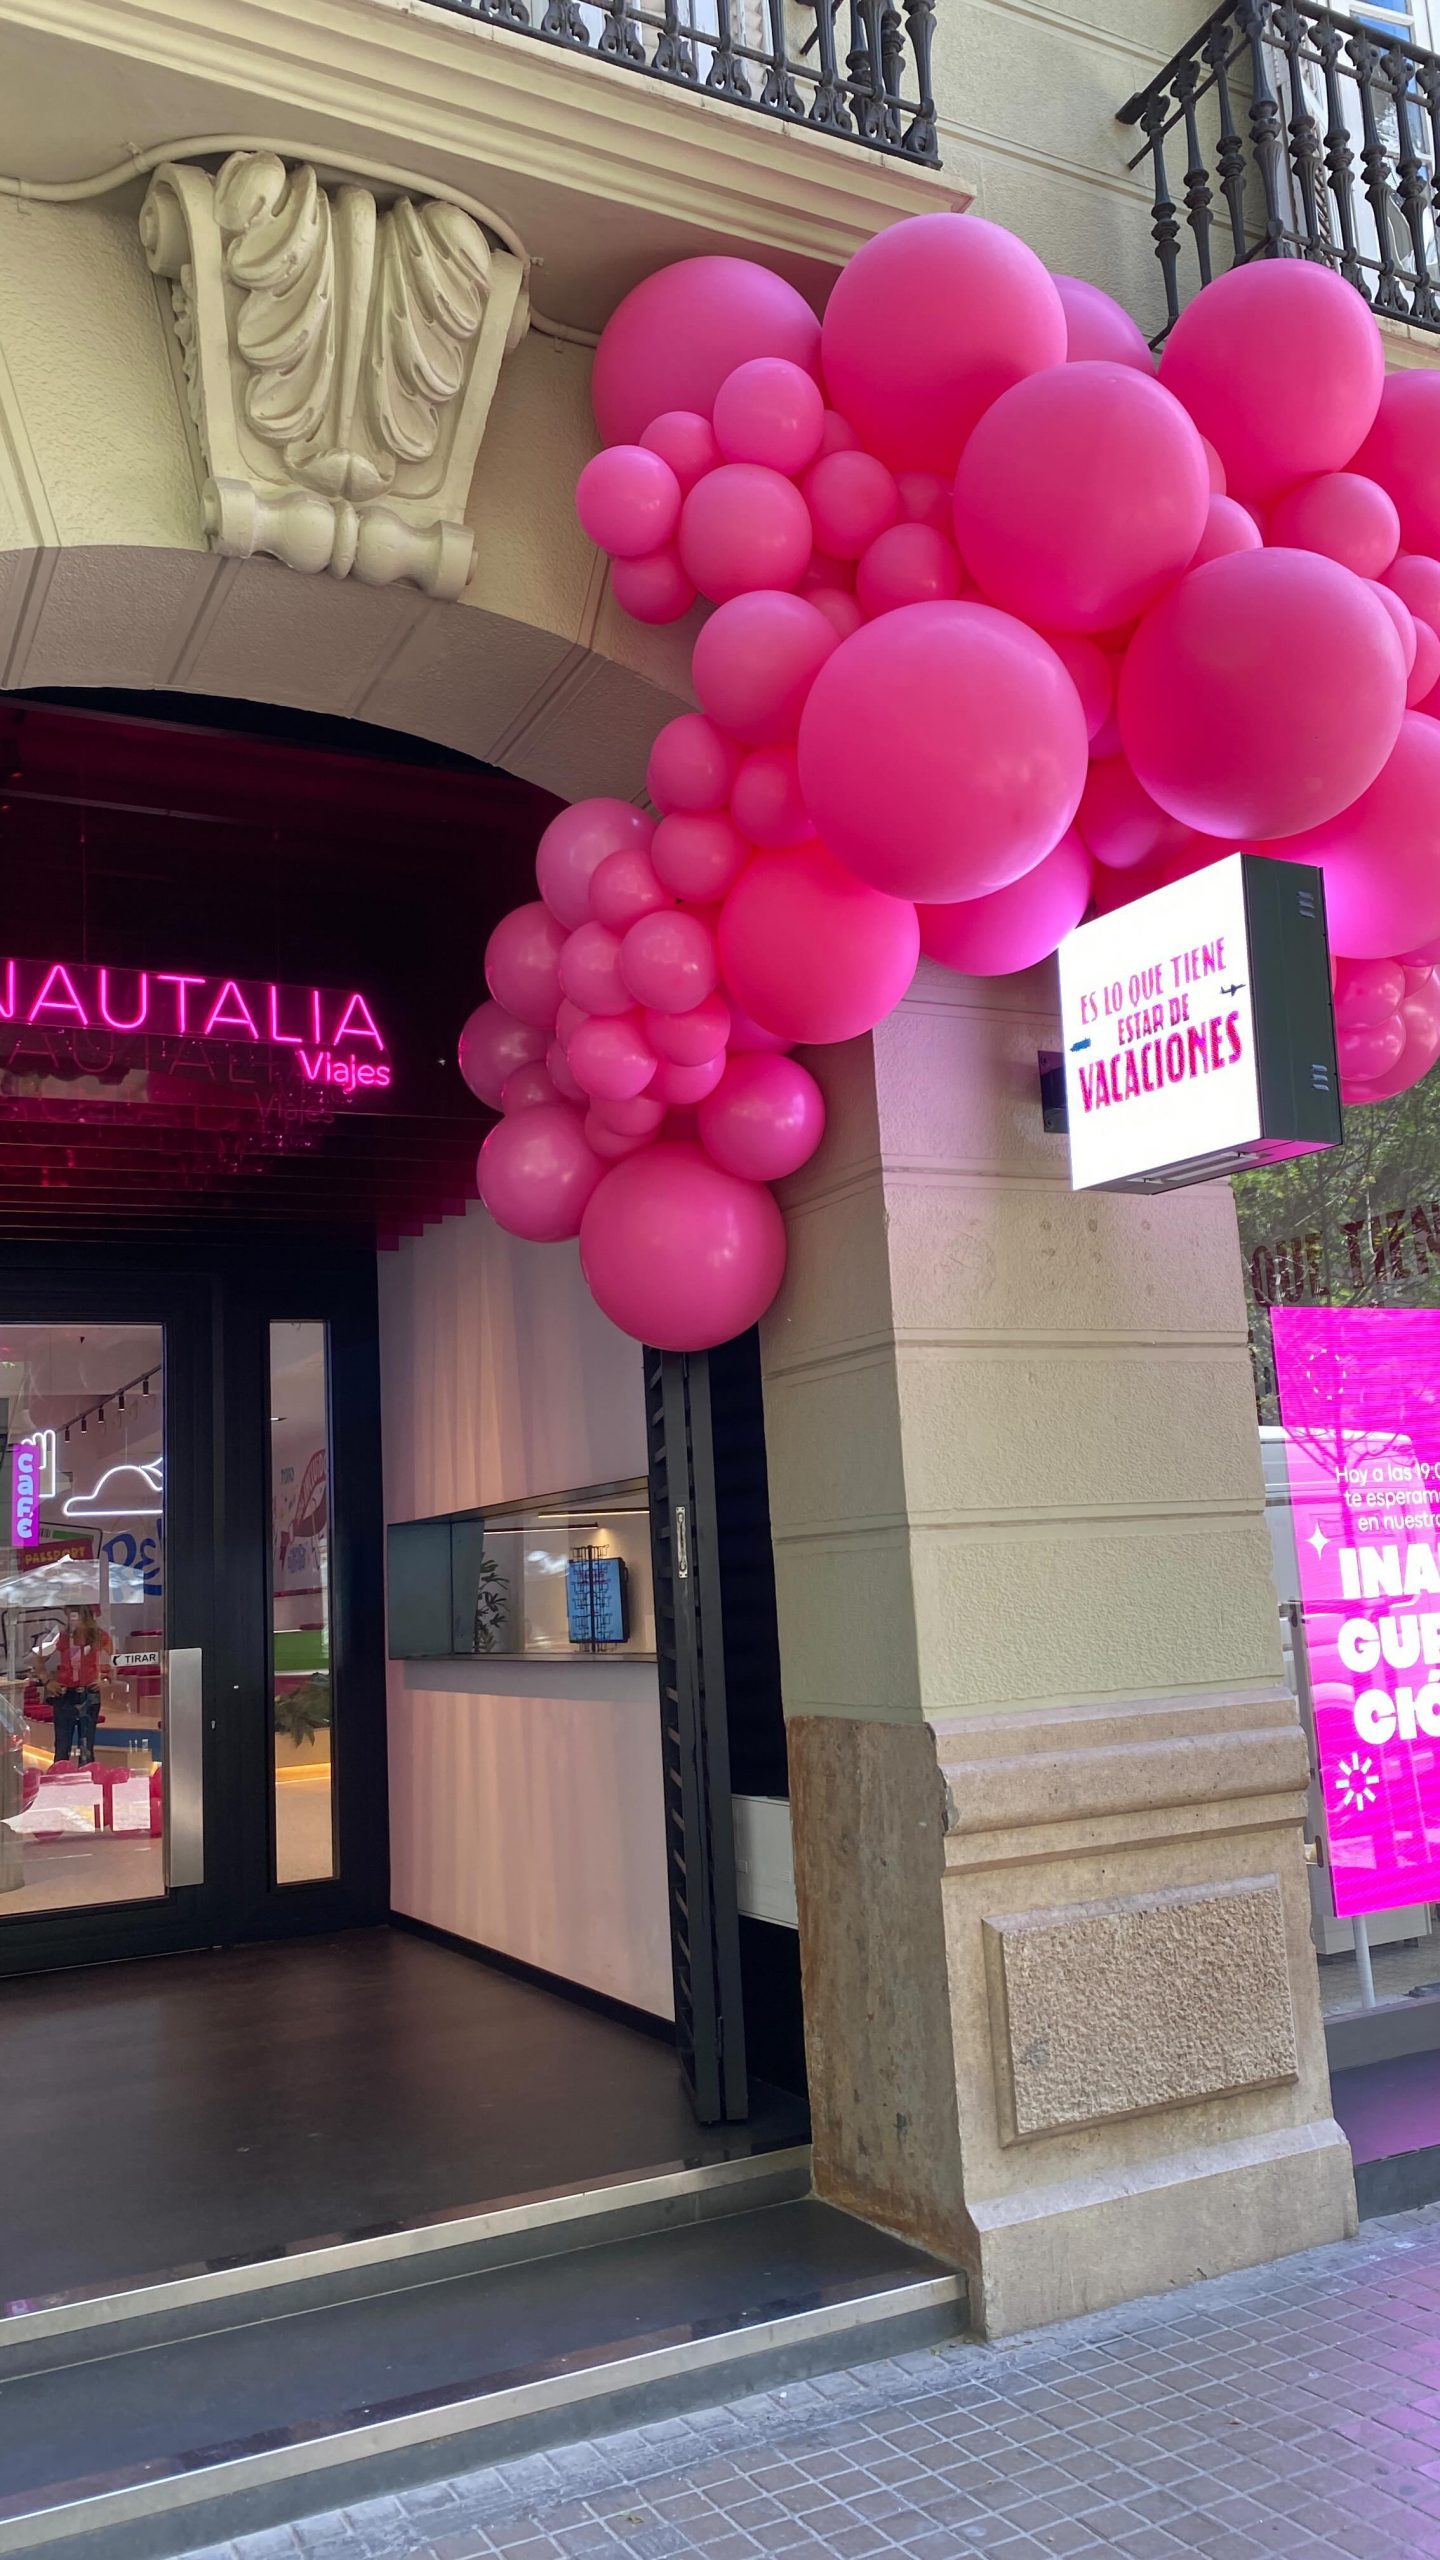 Hoy queremos dar la enhorabuena a @nautaliaviajes por su nuevo espacio en pleno ...